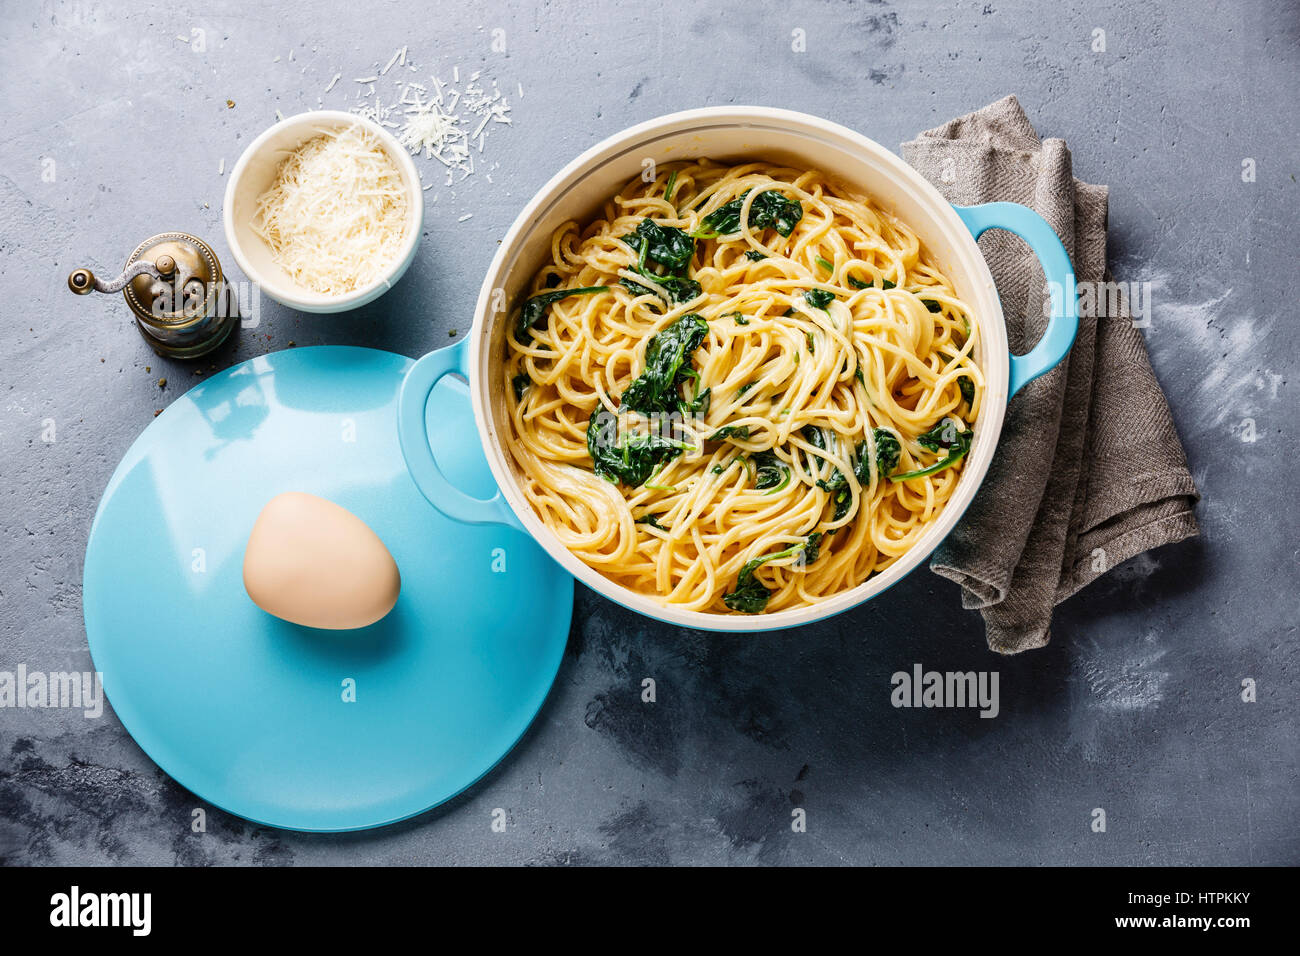 Spaghetti aux épinards et à la crème dans le moule, sur fond de béton gris Banque D'Images